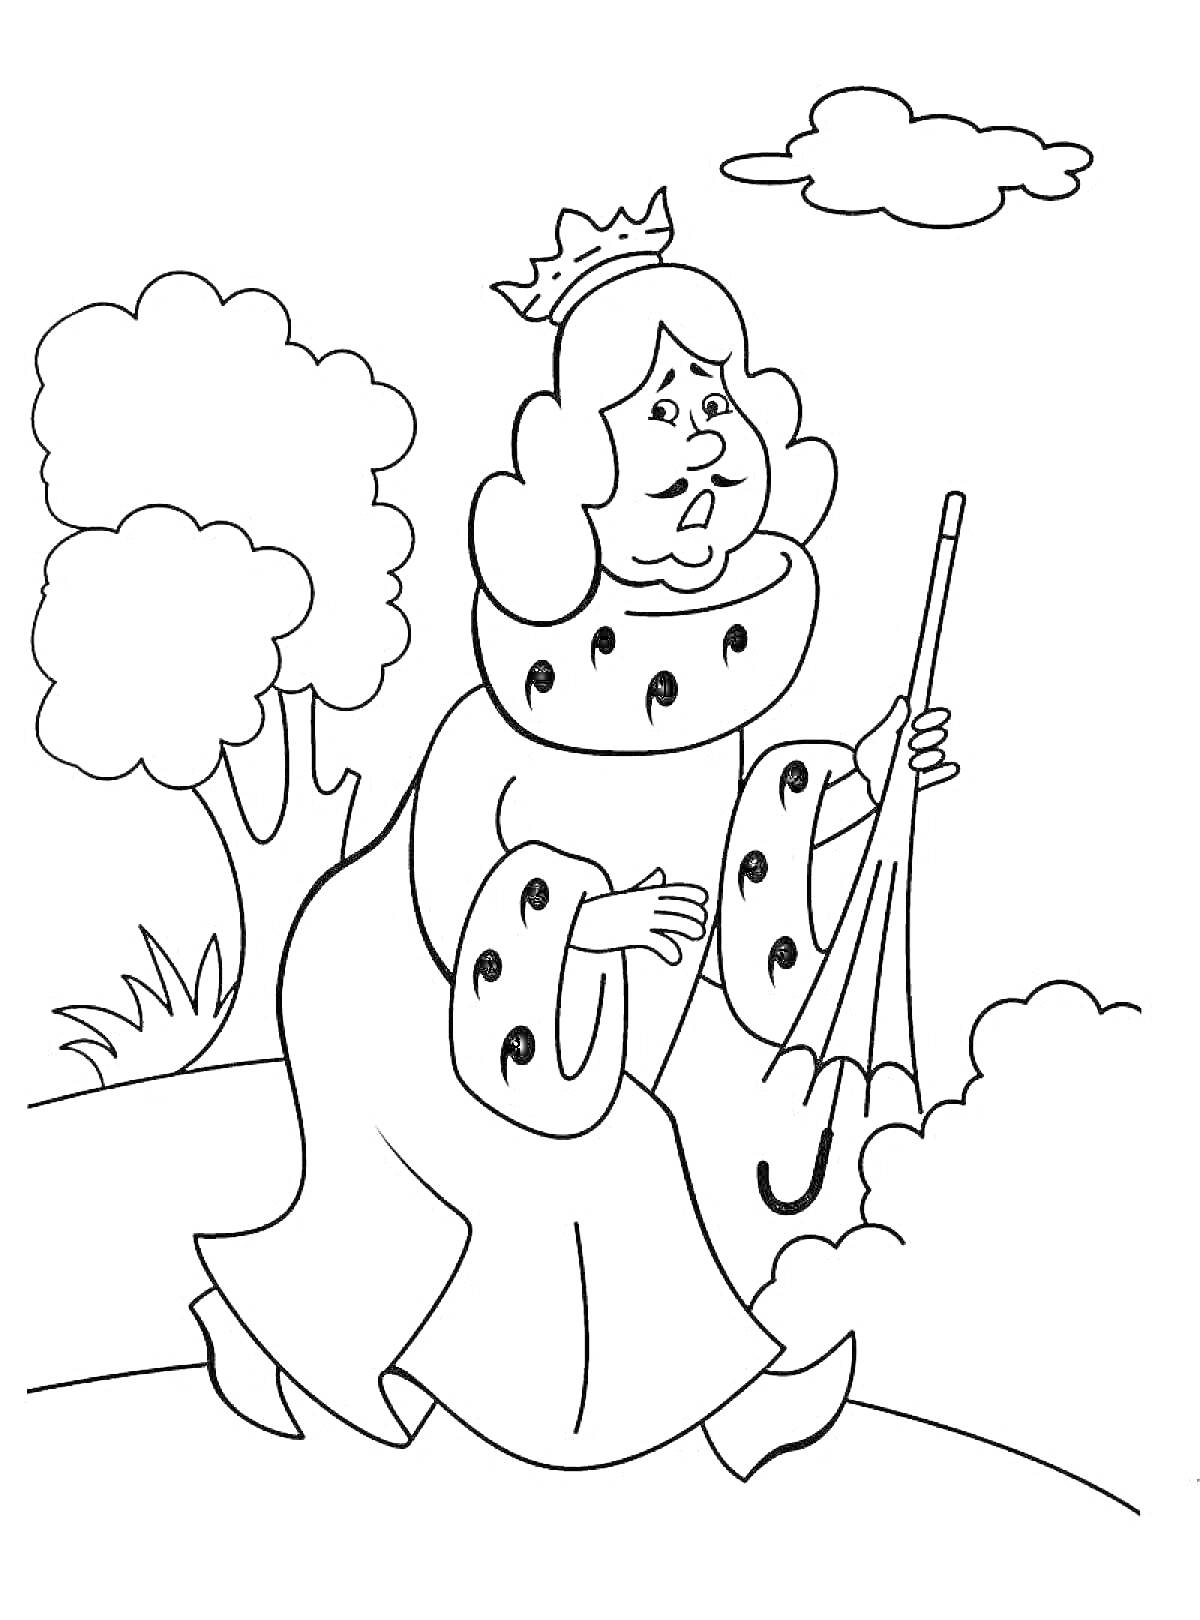 На раскраске изображено: Бременские музыканты, Принцесса, Зонт, Деревья